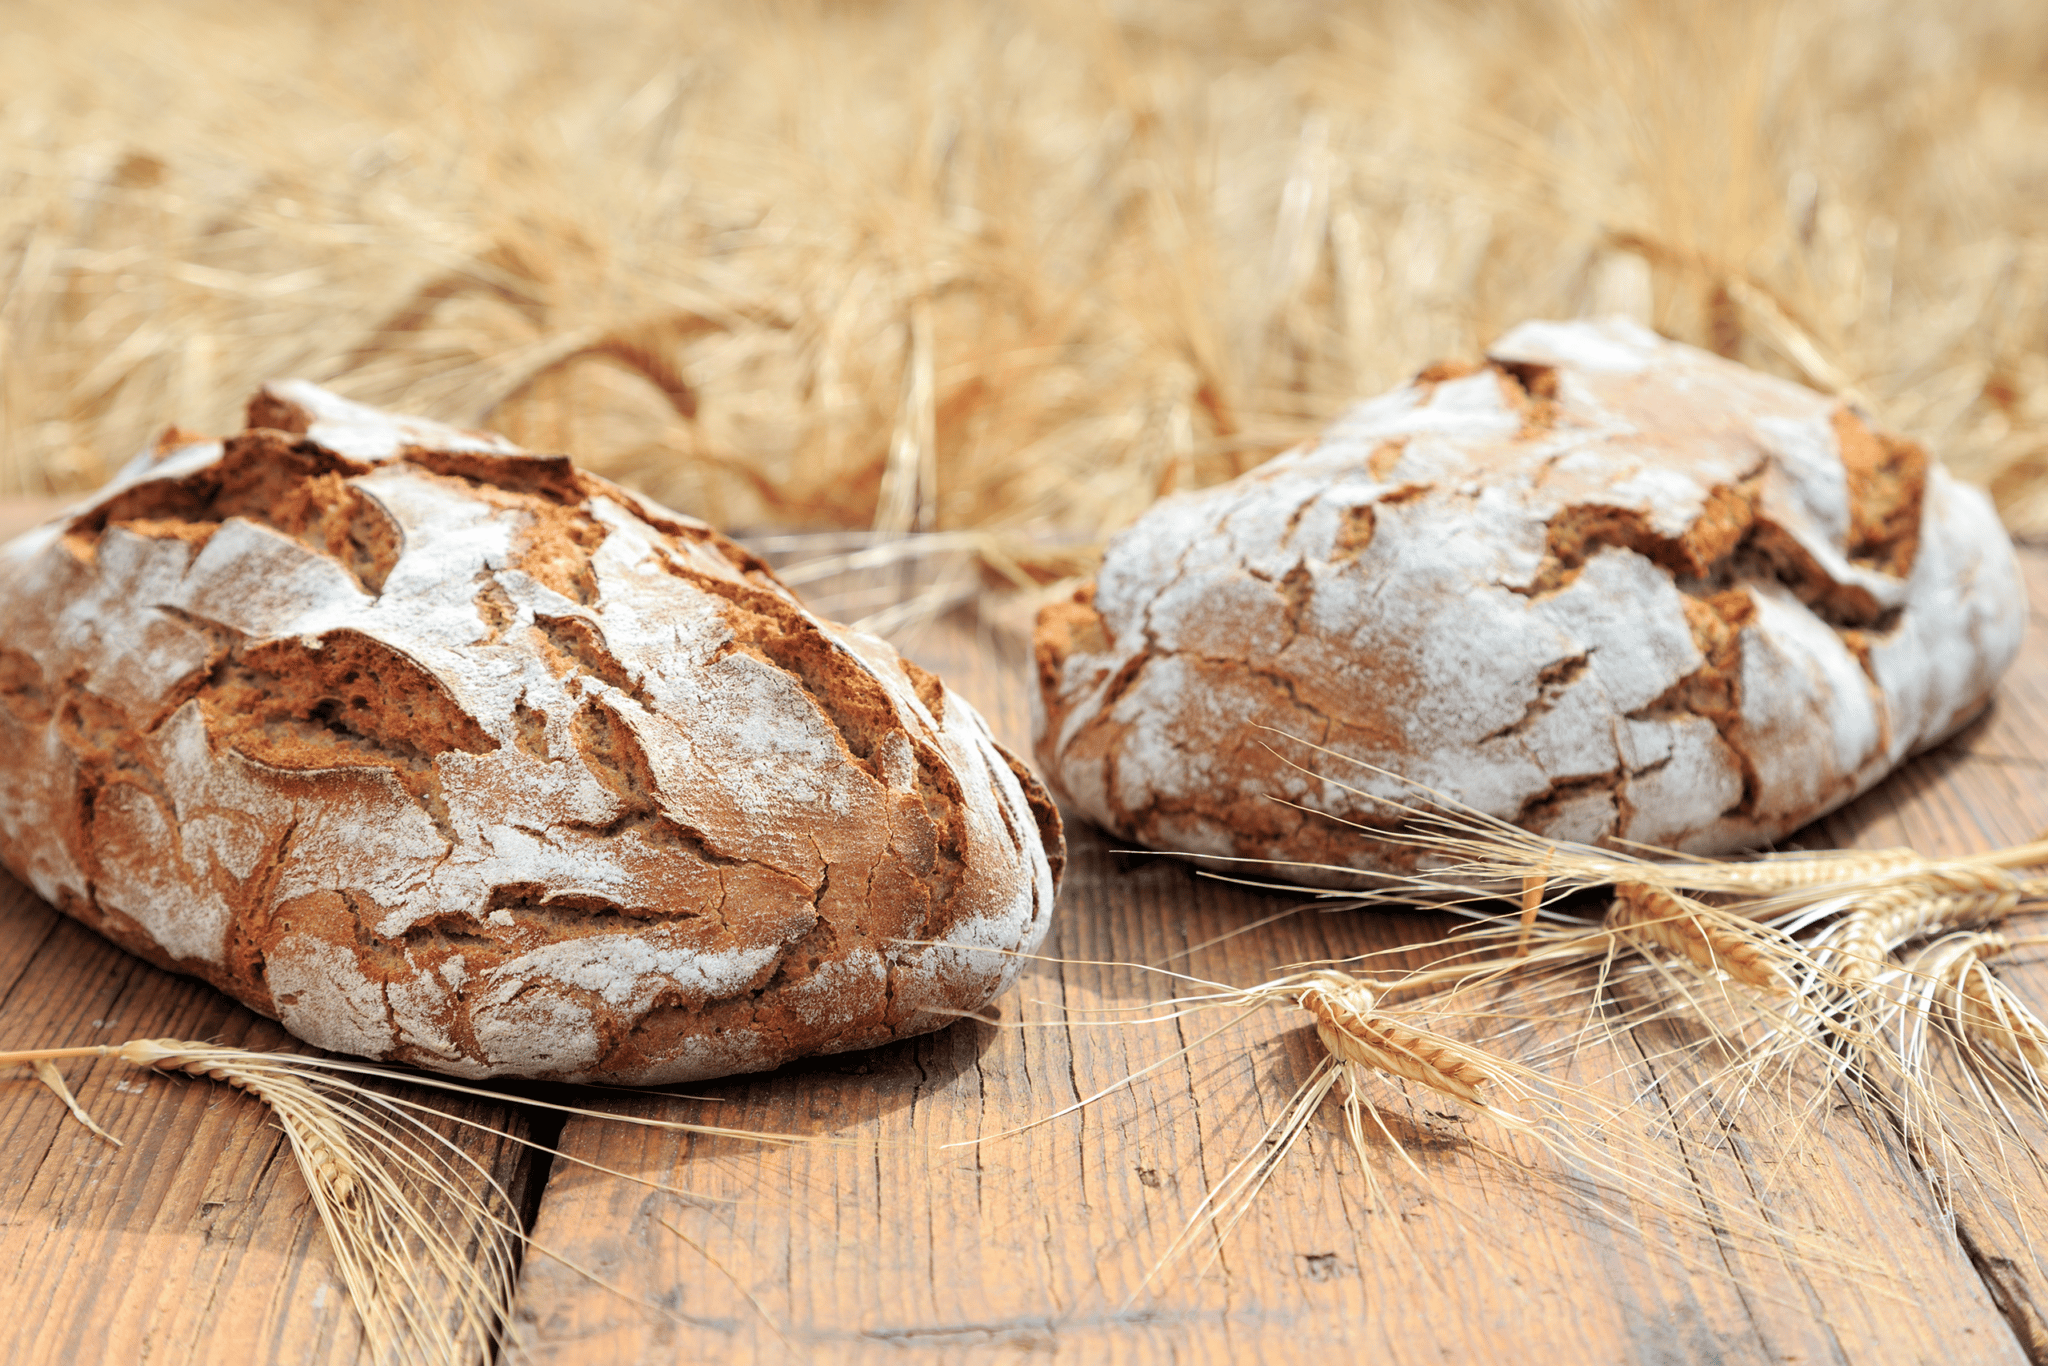 Deutsches Brot gehört zu den beliebtesten Backwaren in deutschen Bäckereien